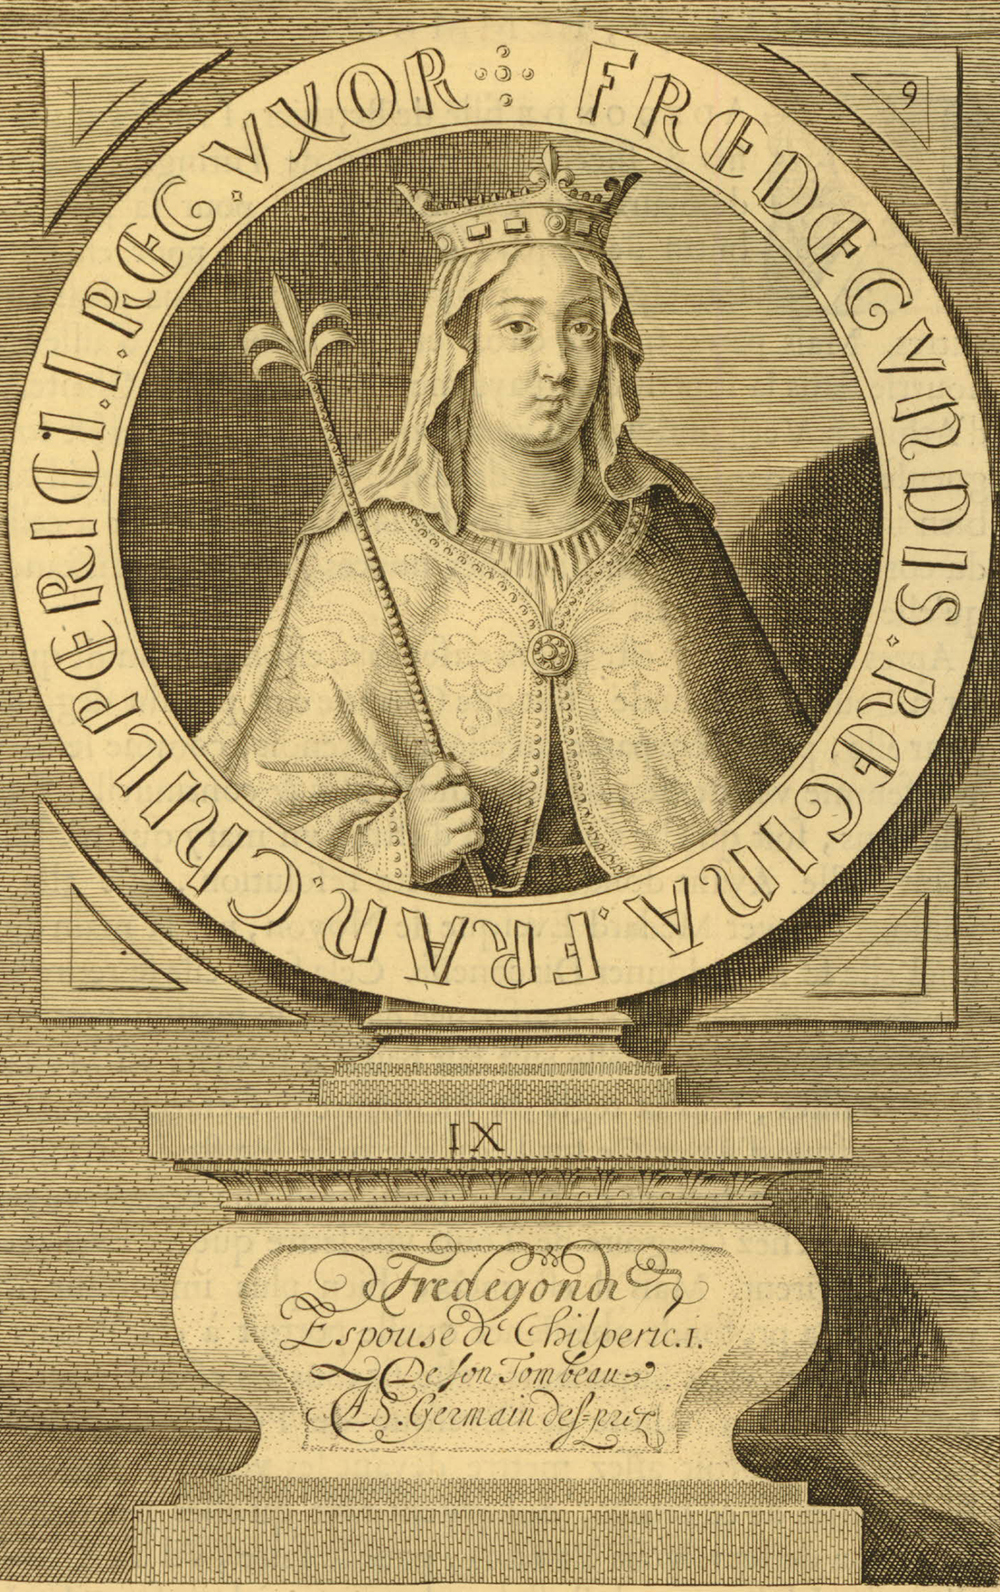 Portrait of Fredegund, c. 1634. British Museum.